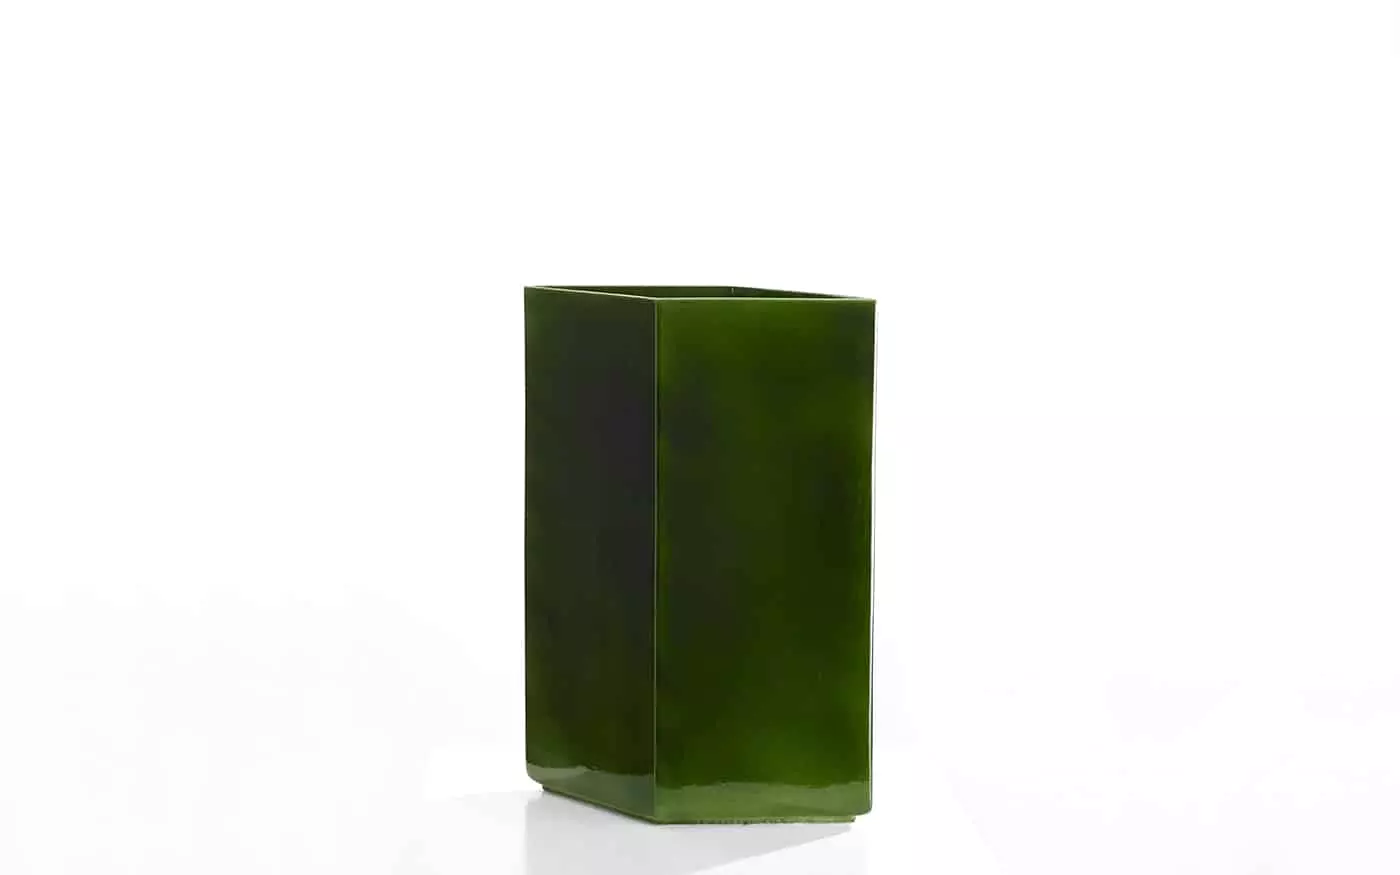 Vase Losange 67 green - Ronan & Erwan Bouroullec - Jewellery - Galerie kreo